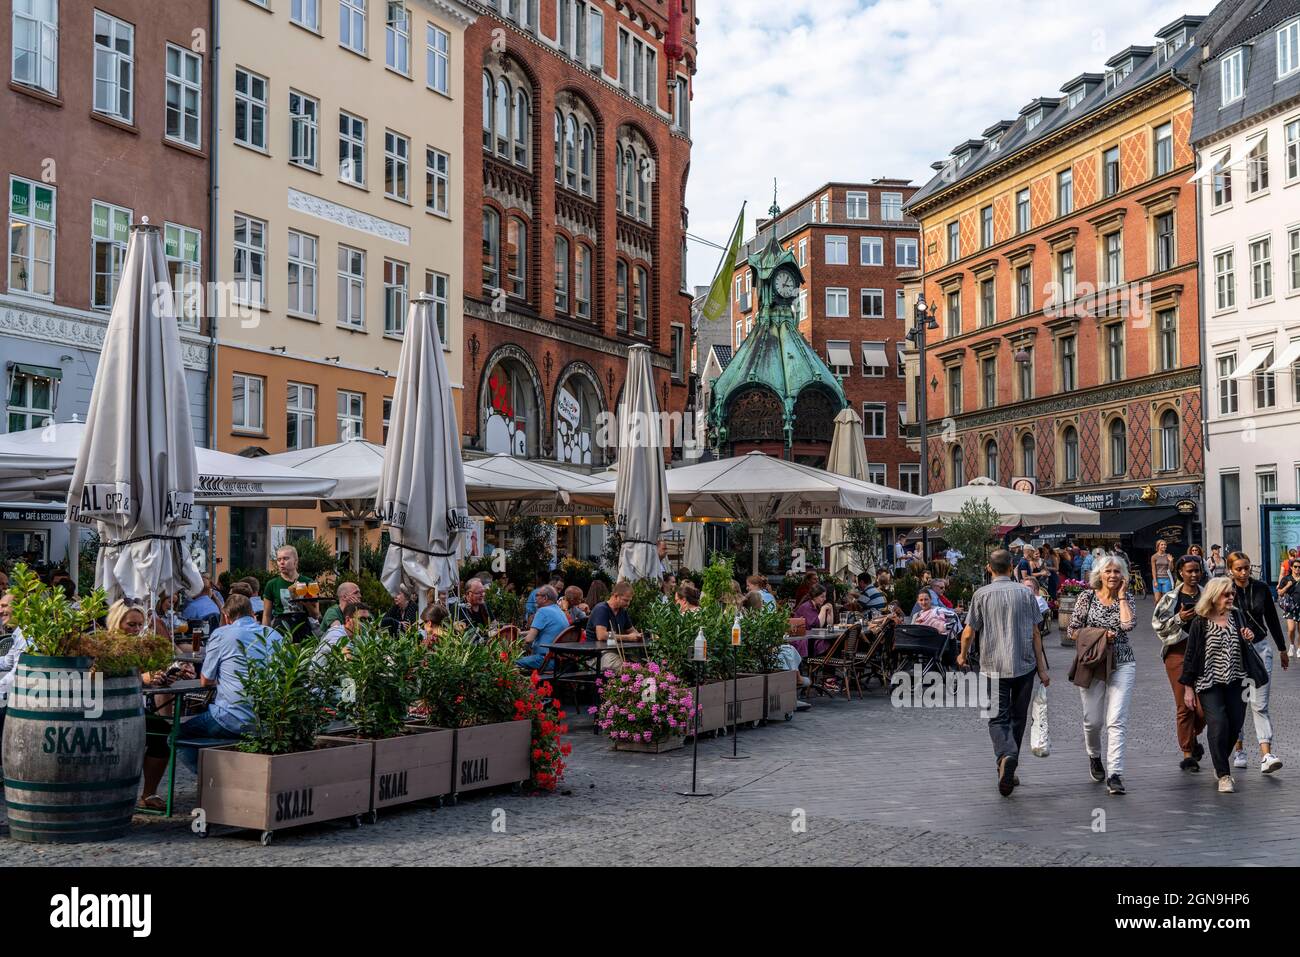 Old Town, Downtown, Kultorvet Square, Fontæne Fountain, Gastronomy, Shops, Copenhagen, Denmark, Stock Photo